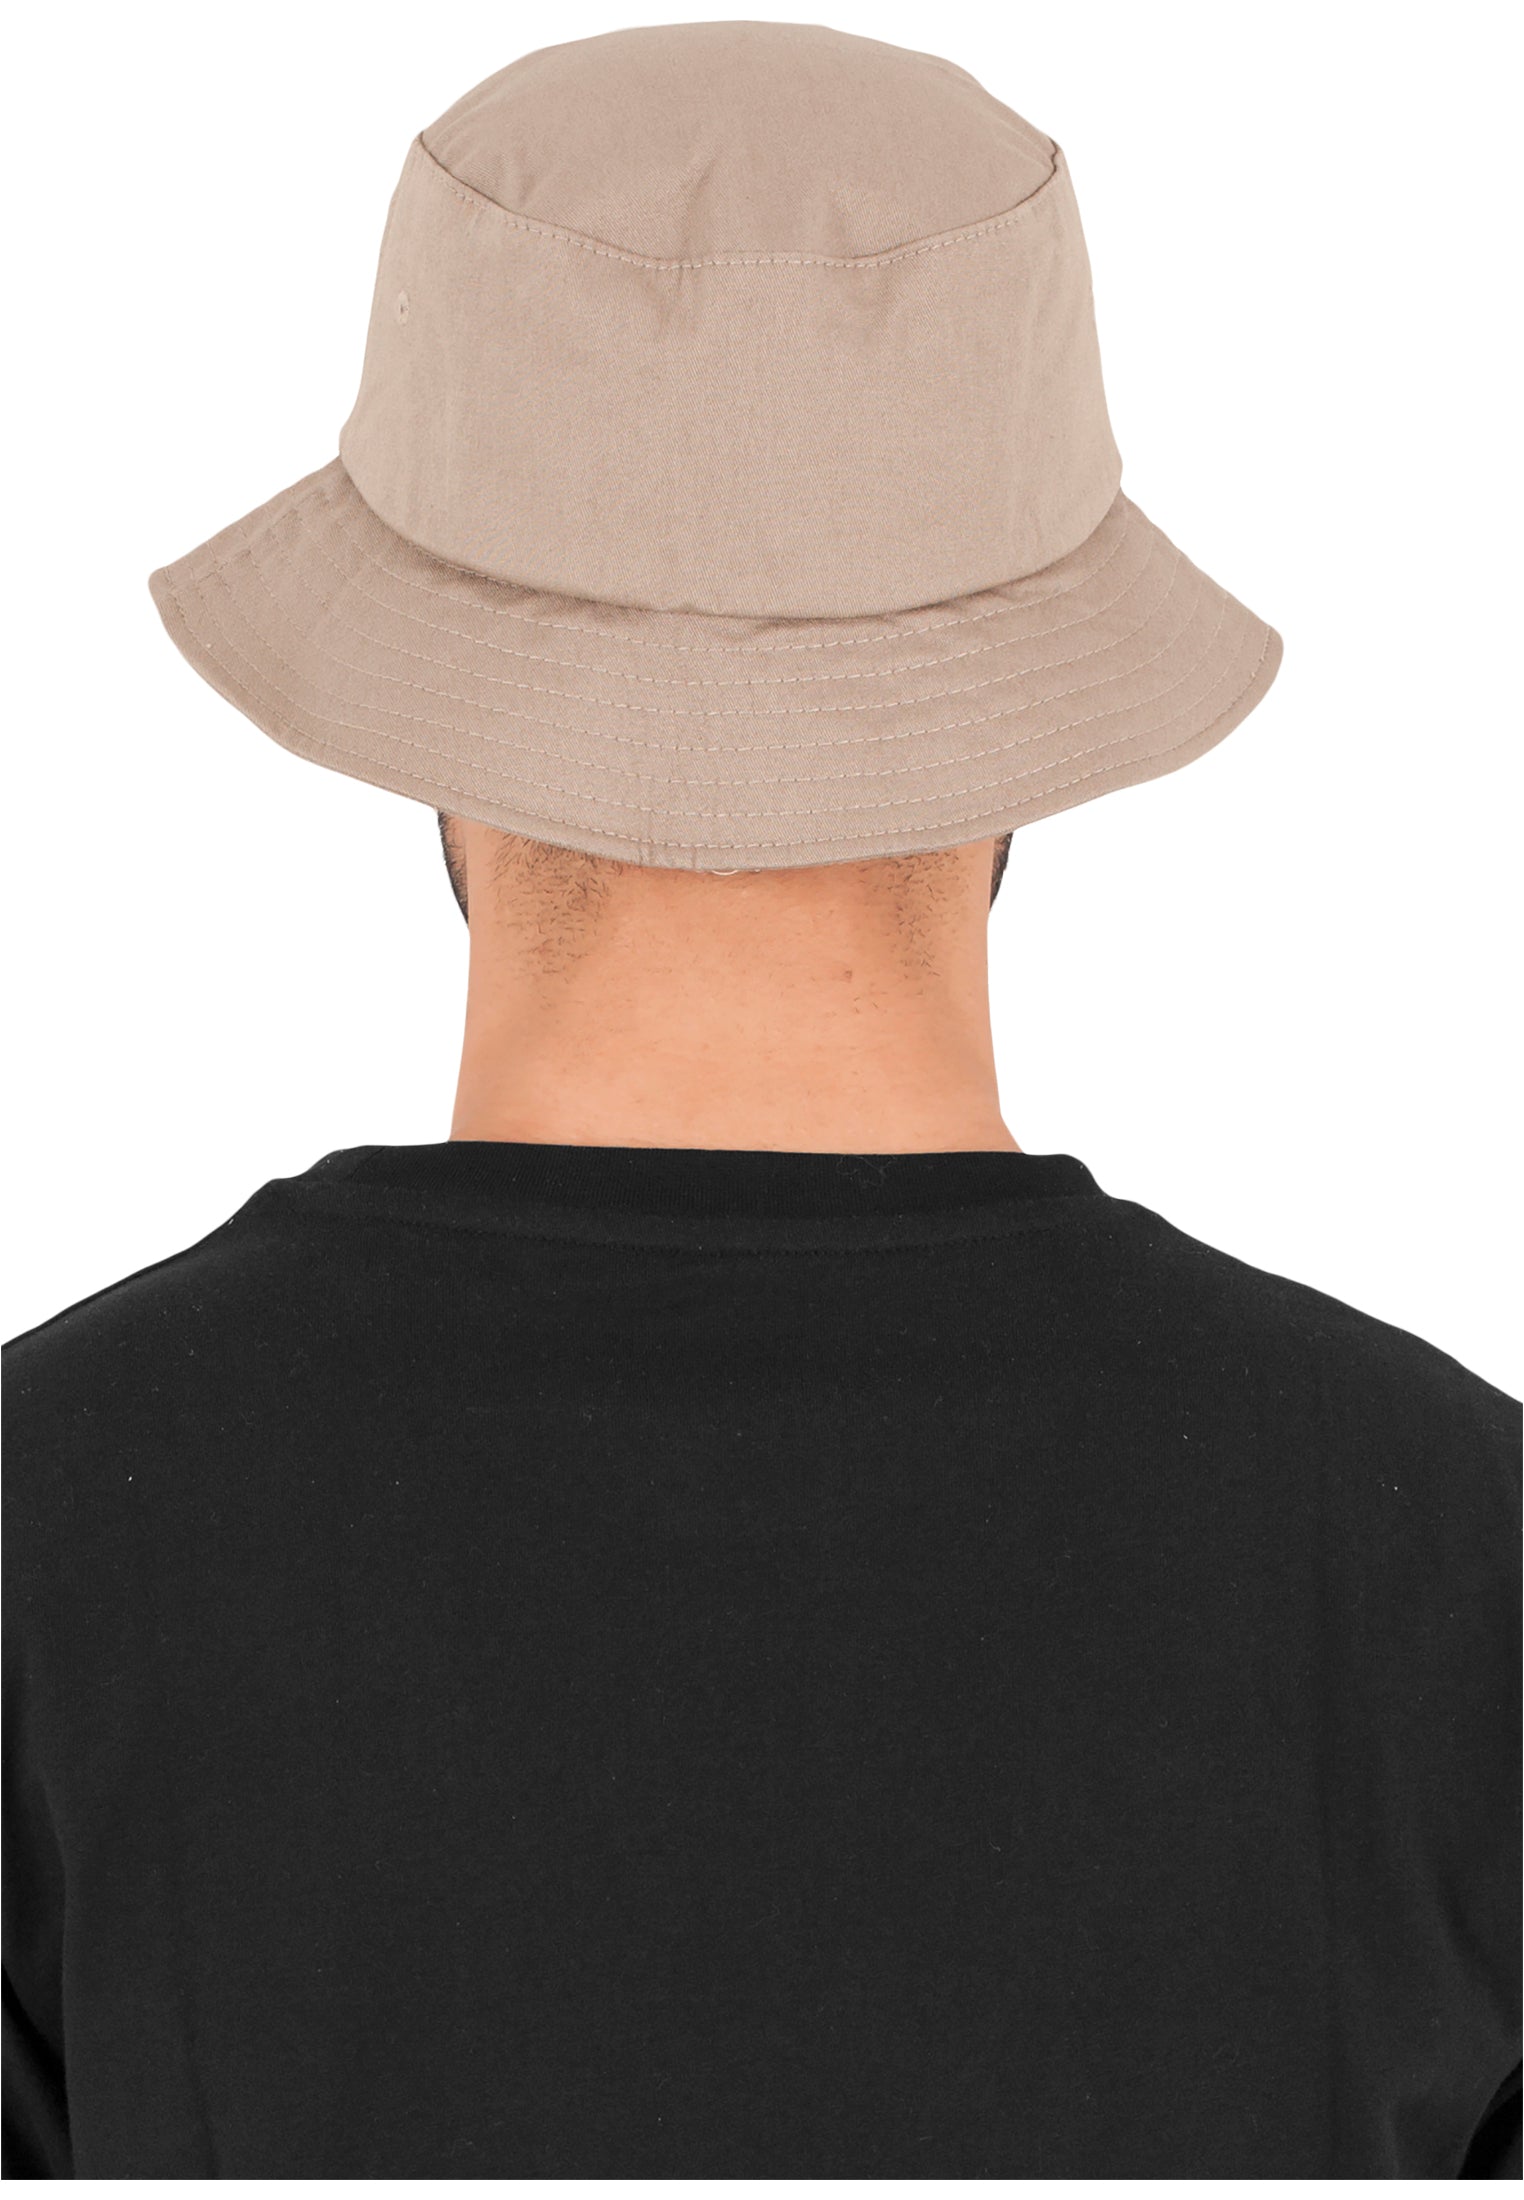 Flexfit Cotton Twill Bucket Hat - Khaki - Headz Up 